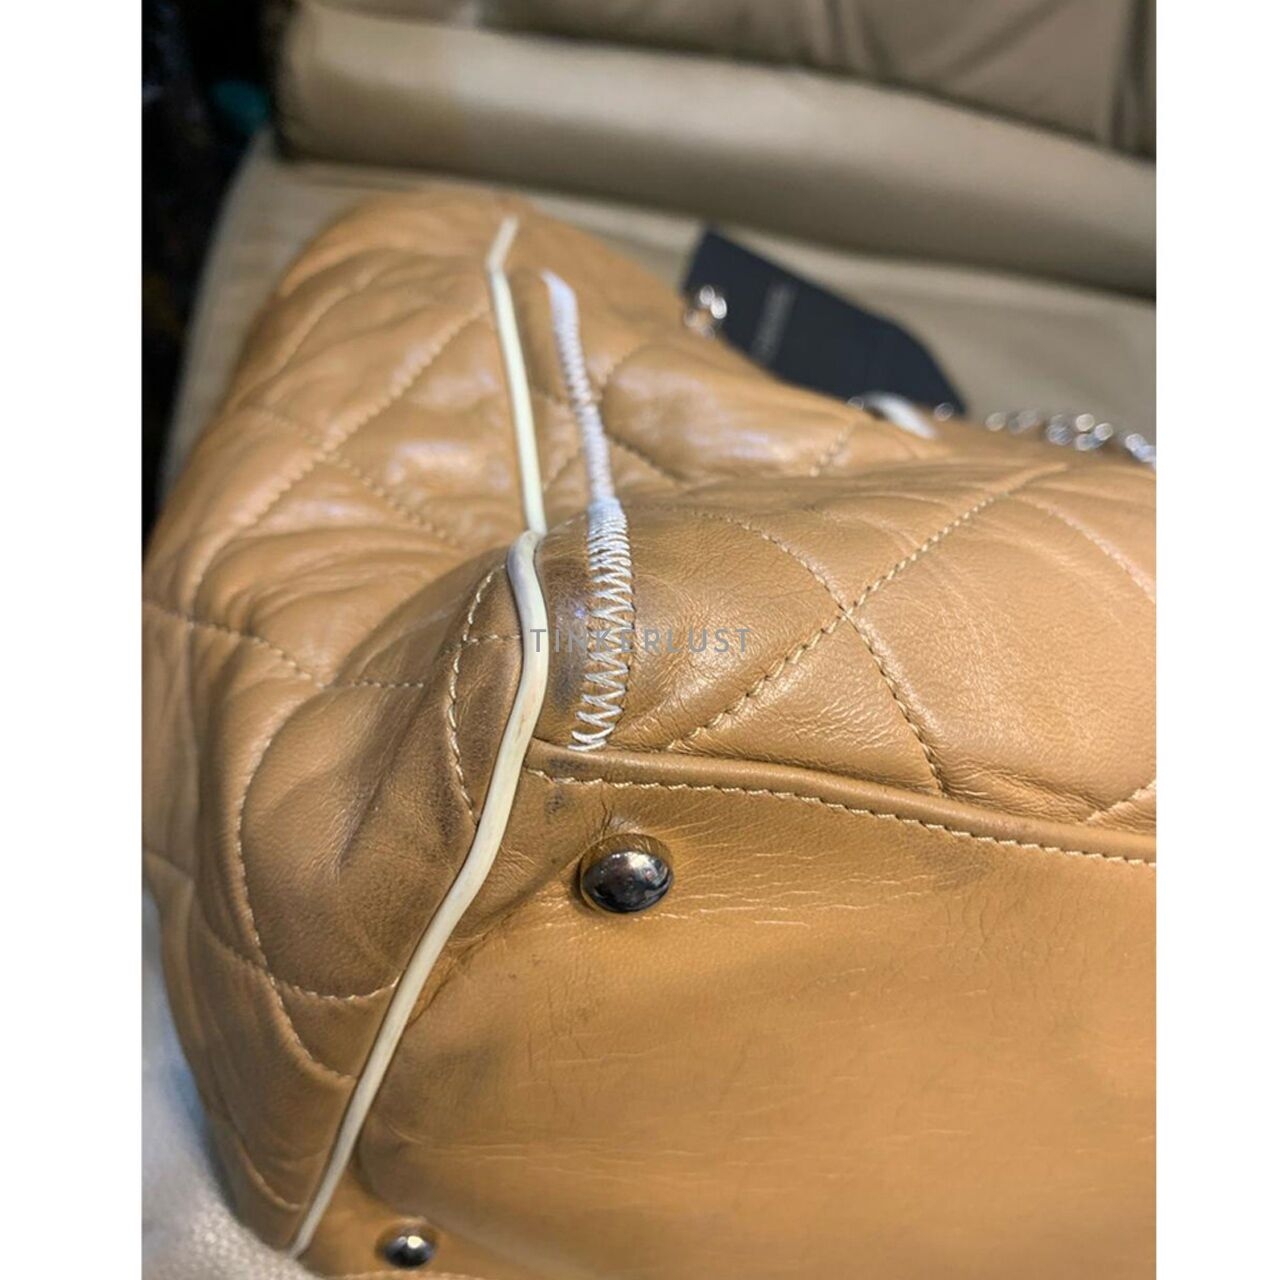 Chanel East West Beige Large Lambskin SHW #12 Tote Bag 